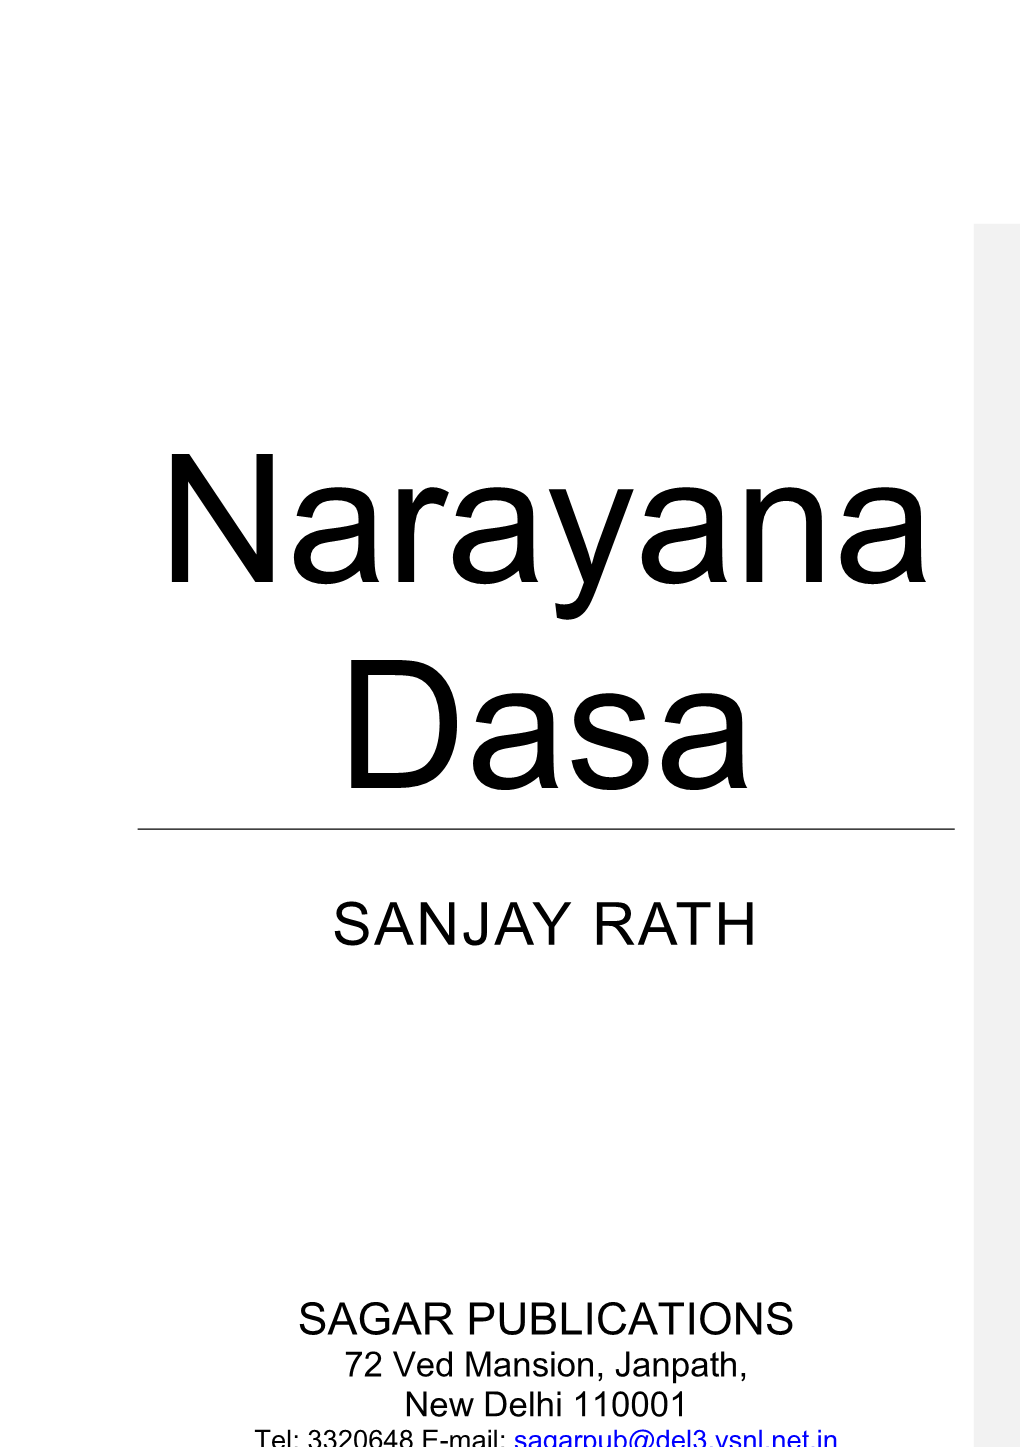 Order of Narayana Dasa